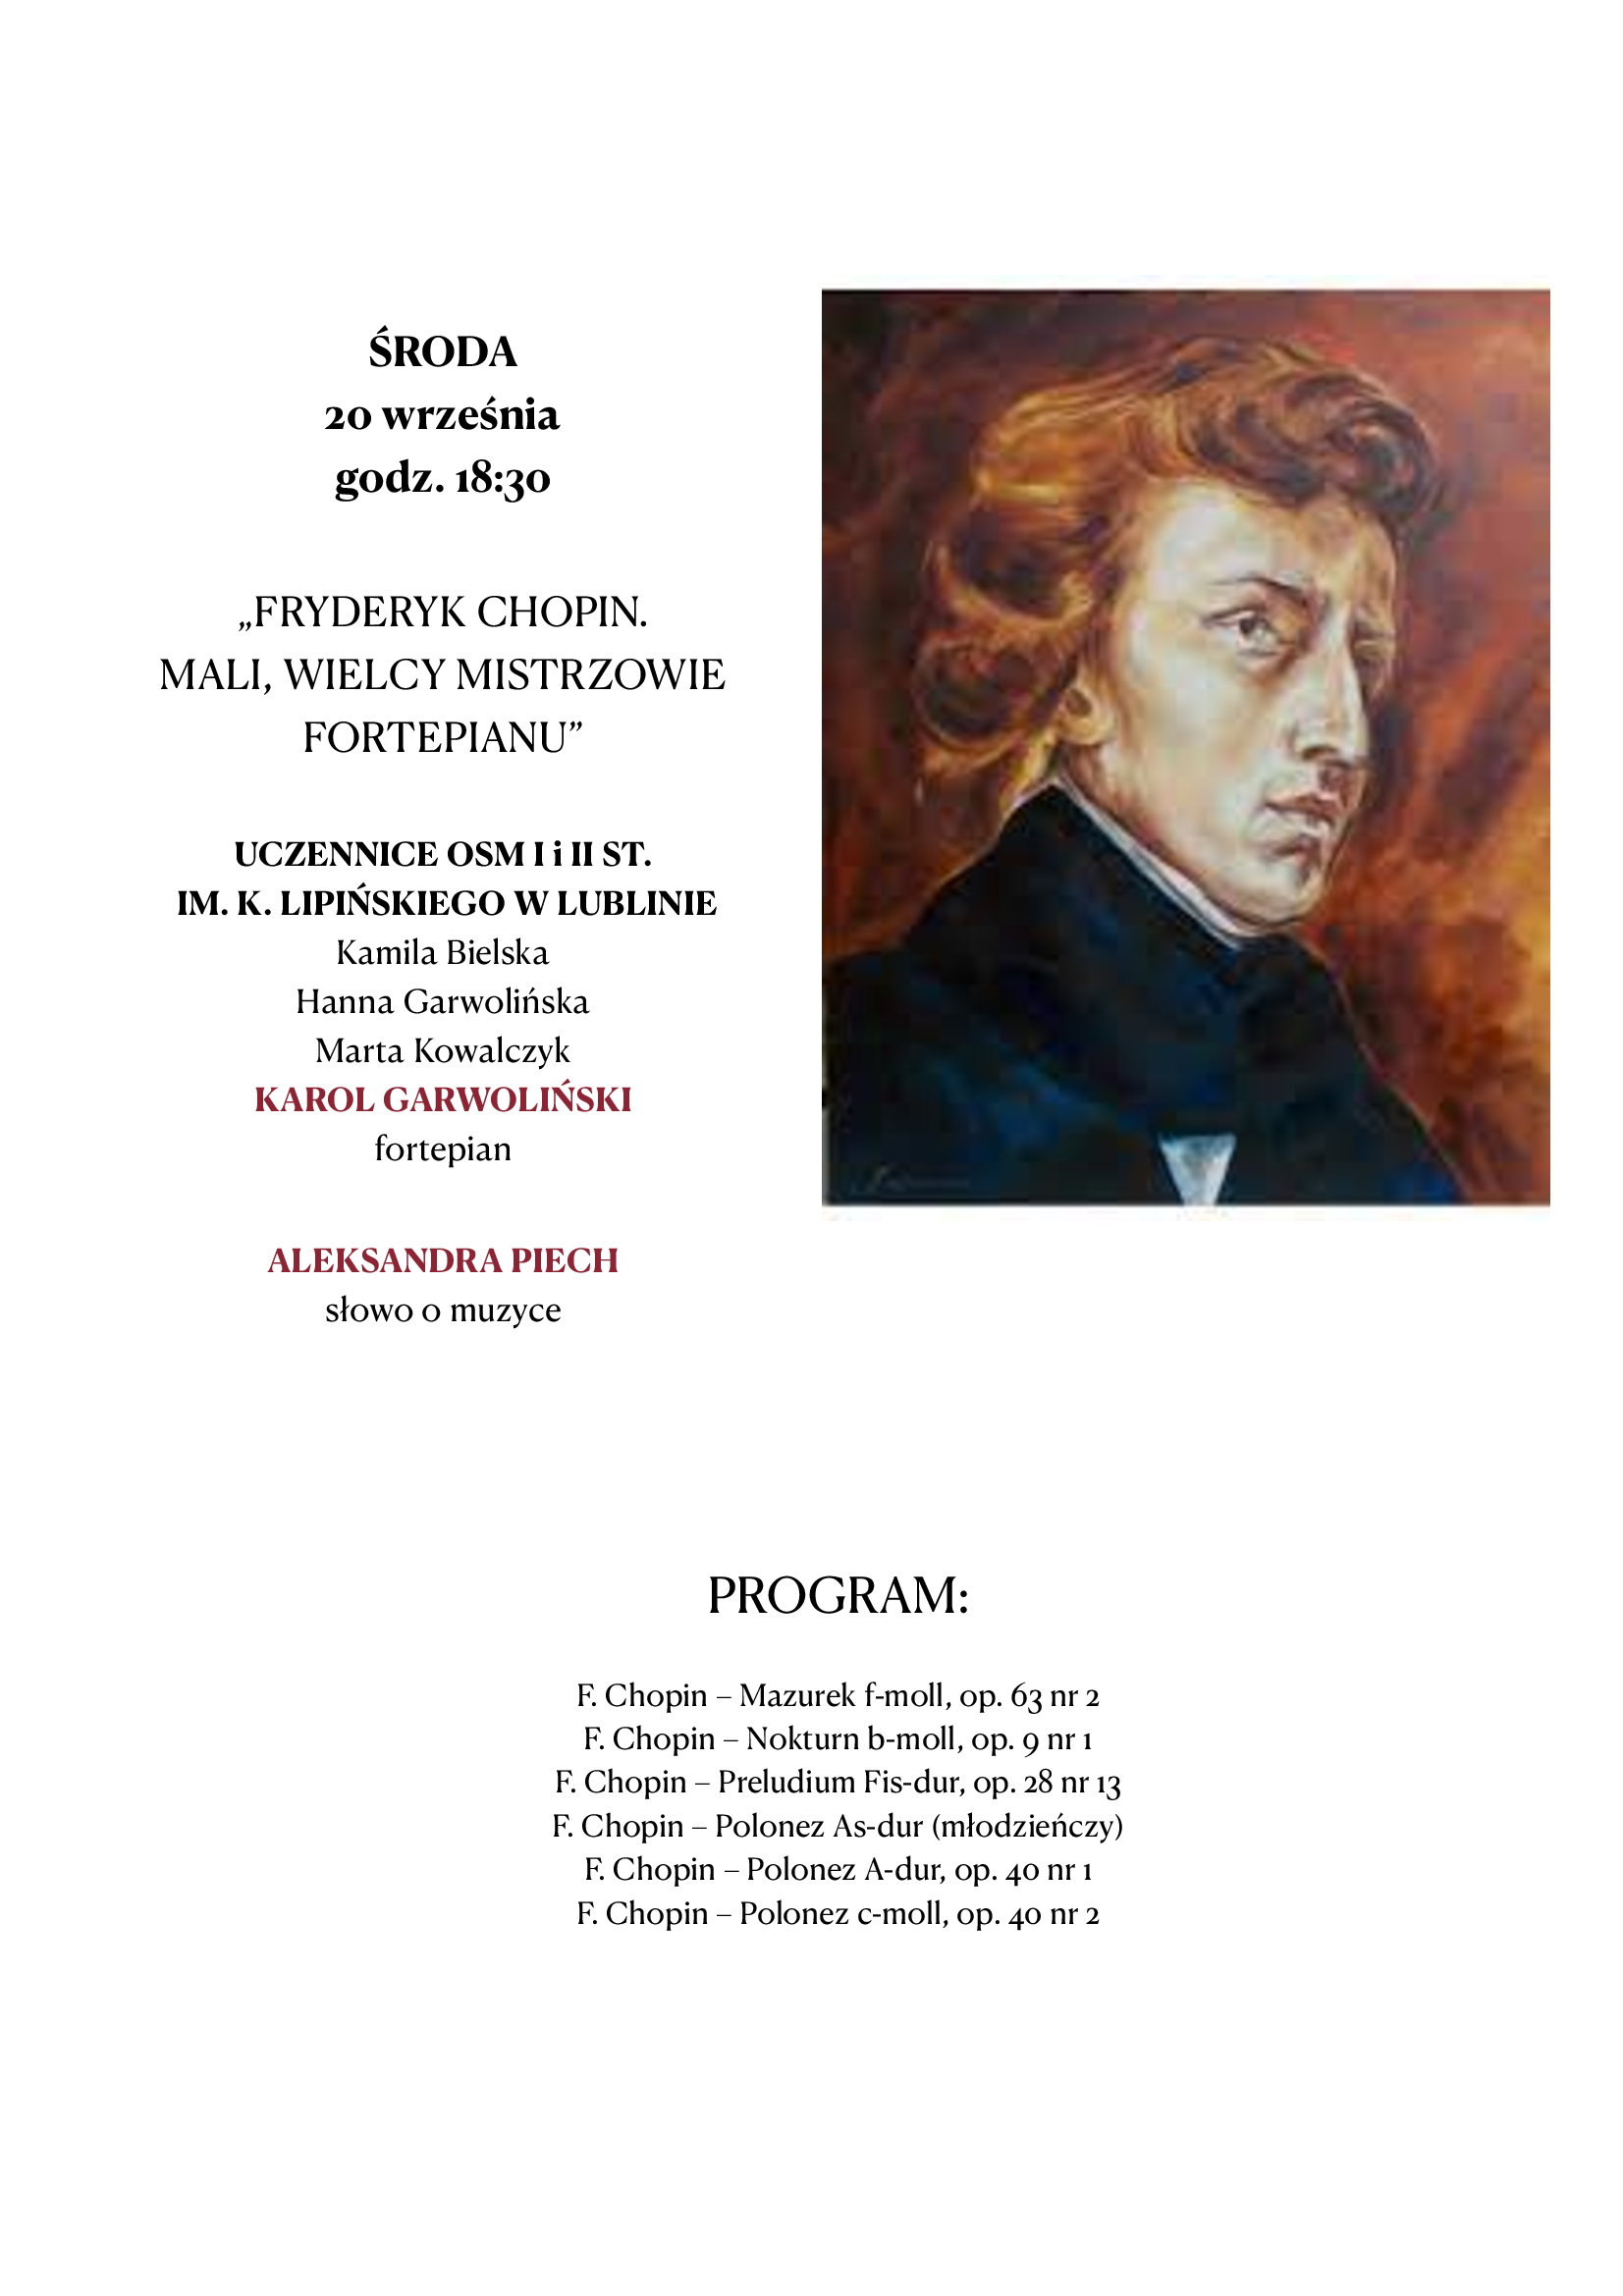 Plakat z informacją o programie koncertu i portretem Fryderyka Chopina